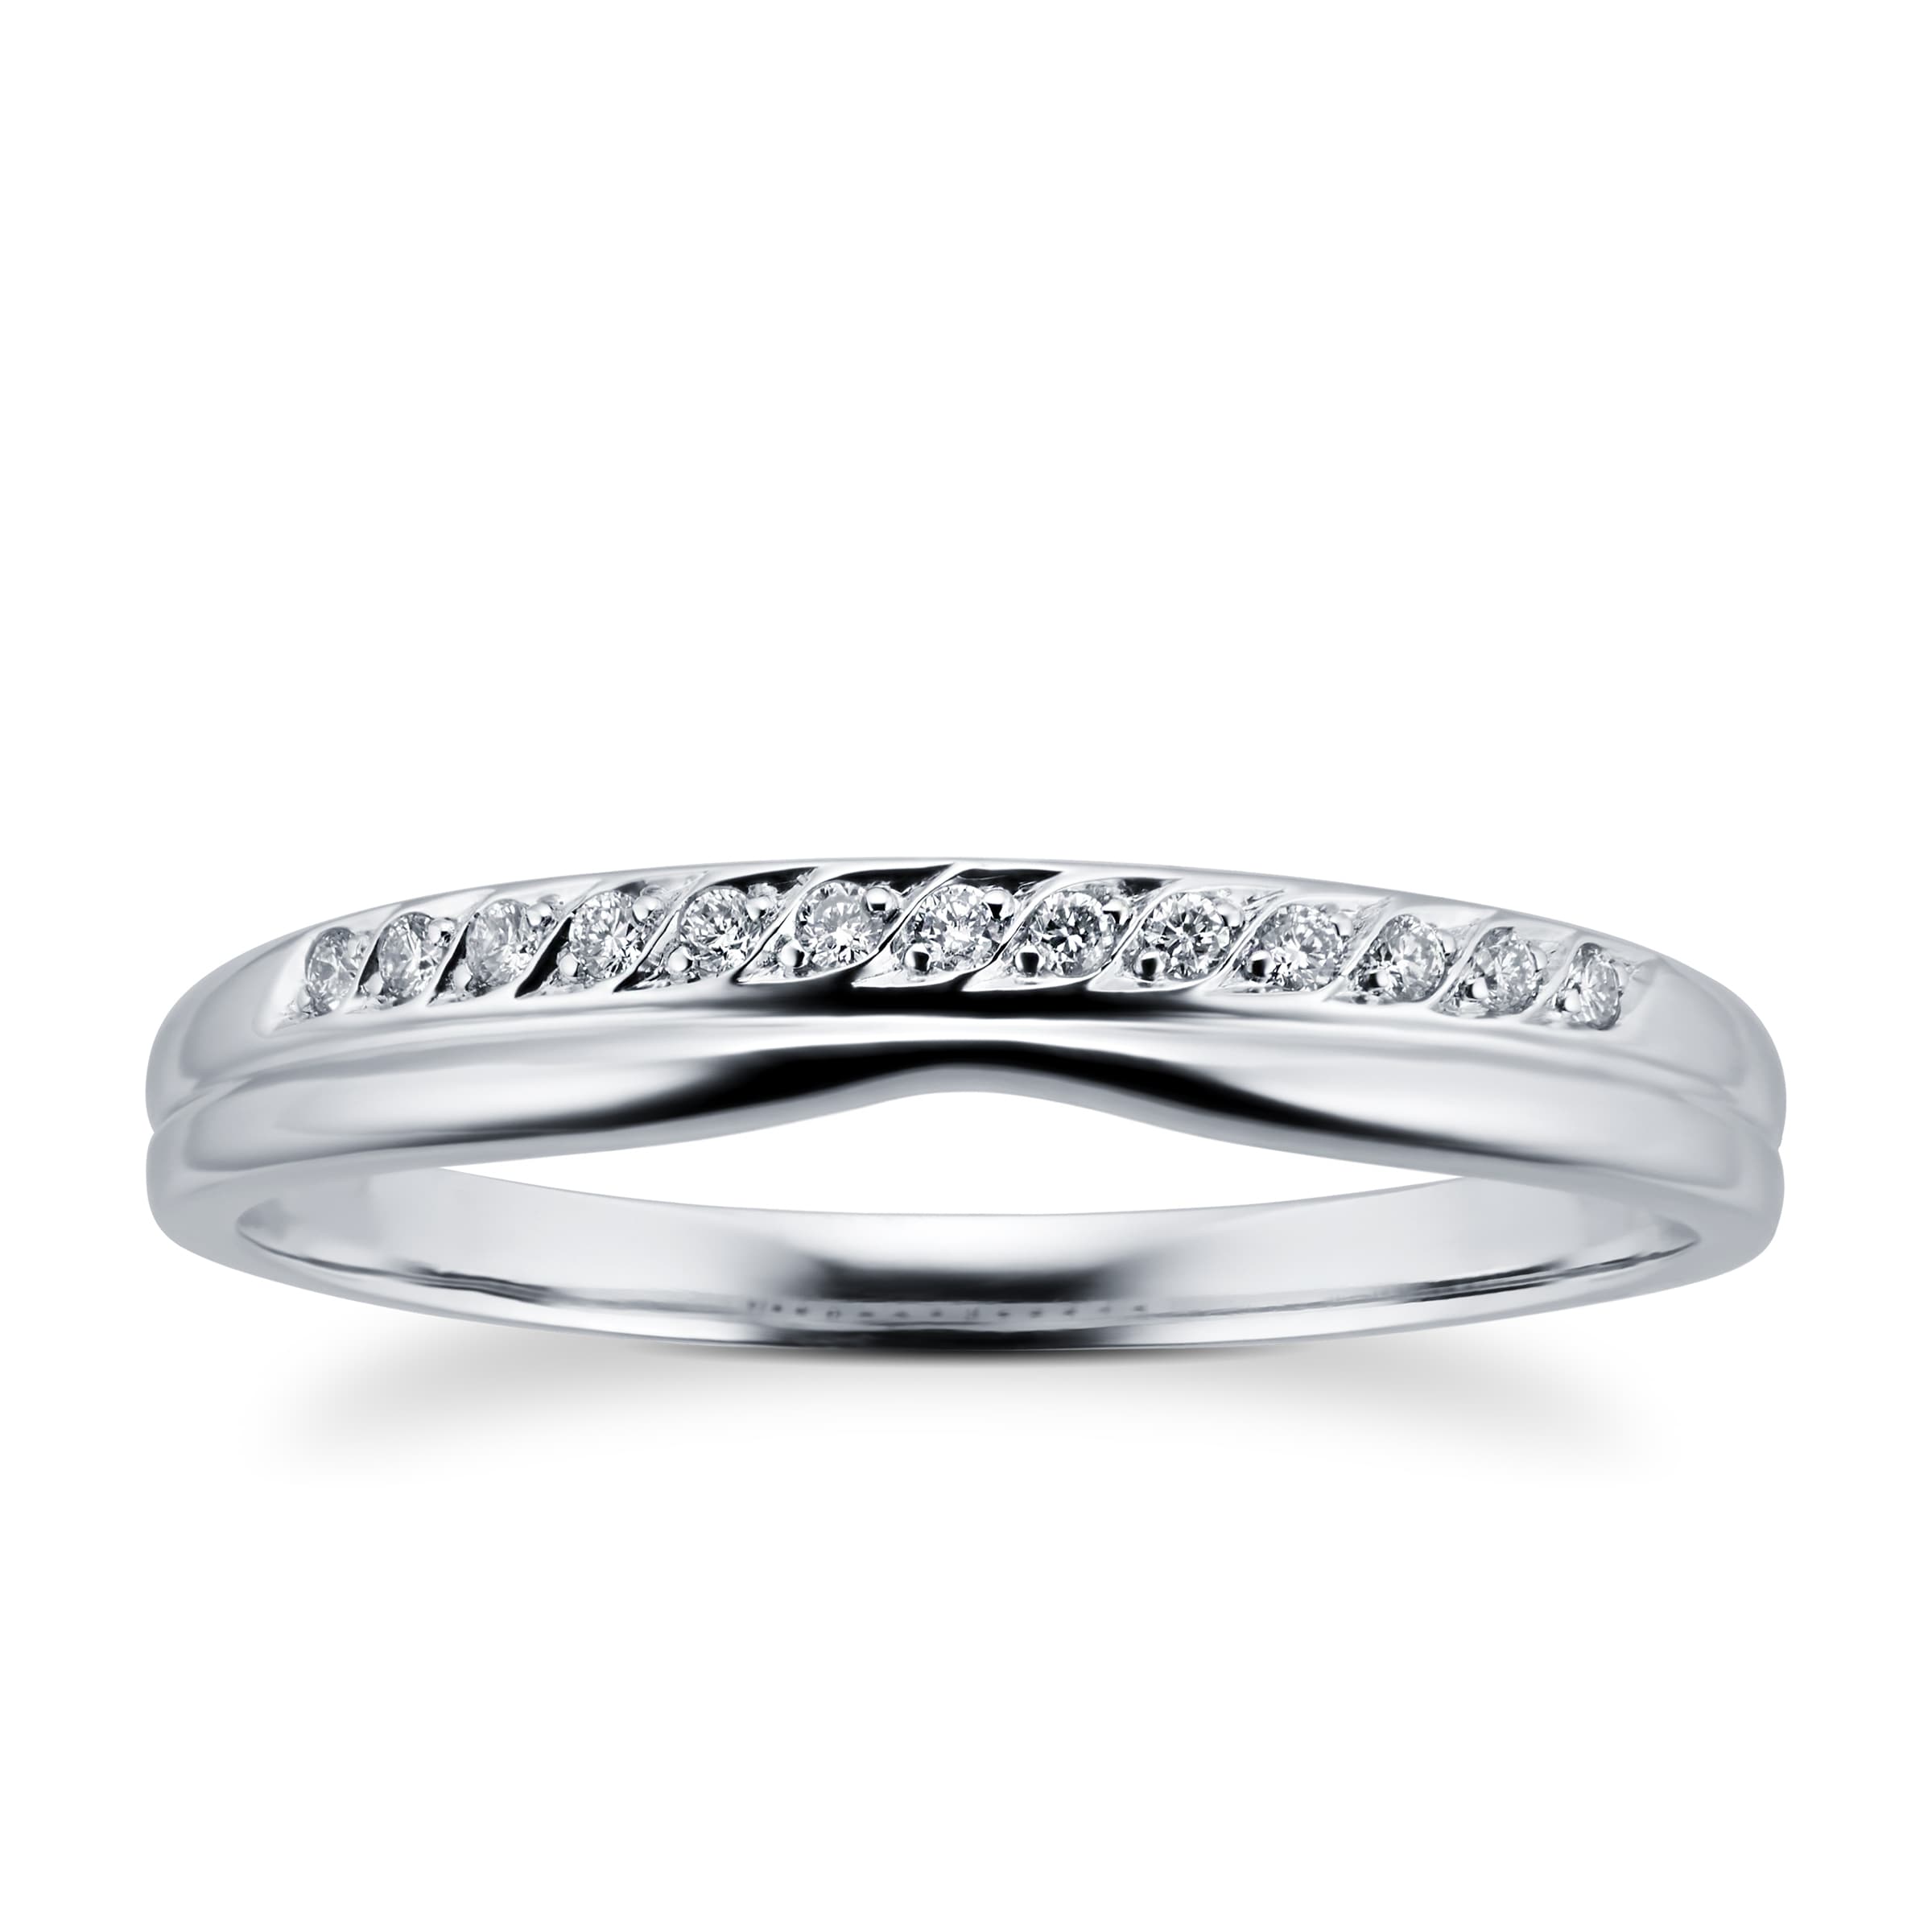 Ladies Diamond Set Shaped Wedding Ring In 18 Carat White Gold - Ring Size P